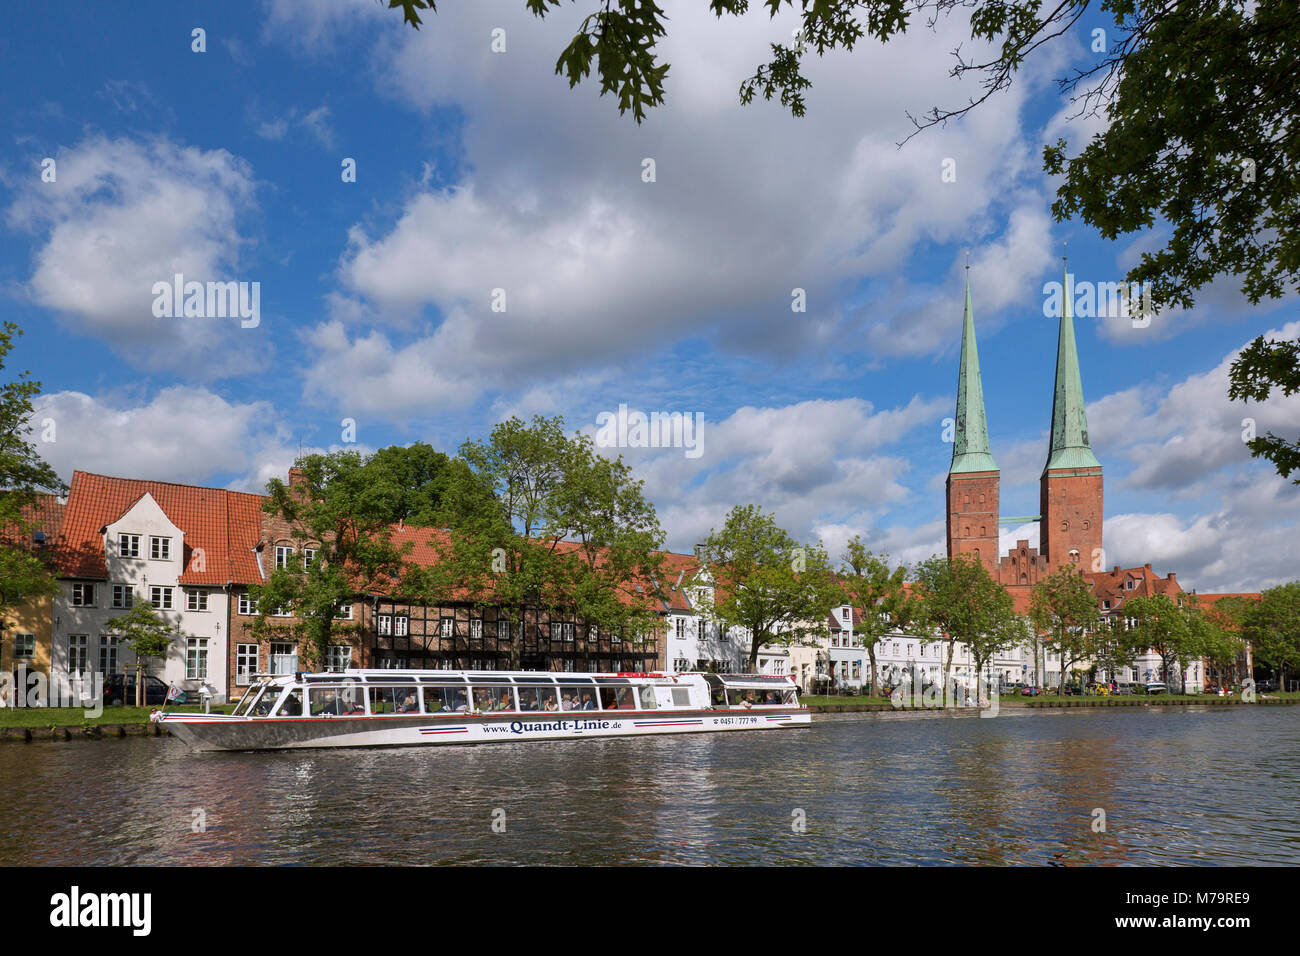 Touristische Bootsfahrt auf der Trave und den Lübecker Dom/Dom zu Lübeck/Lübecker Dom in der Hansestadt Lübeck, Schleswig-Holstein, Deutschland Stockfoto